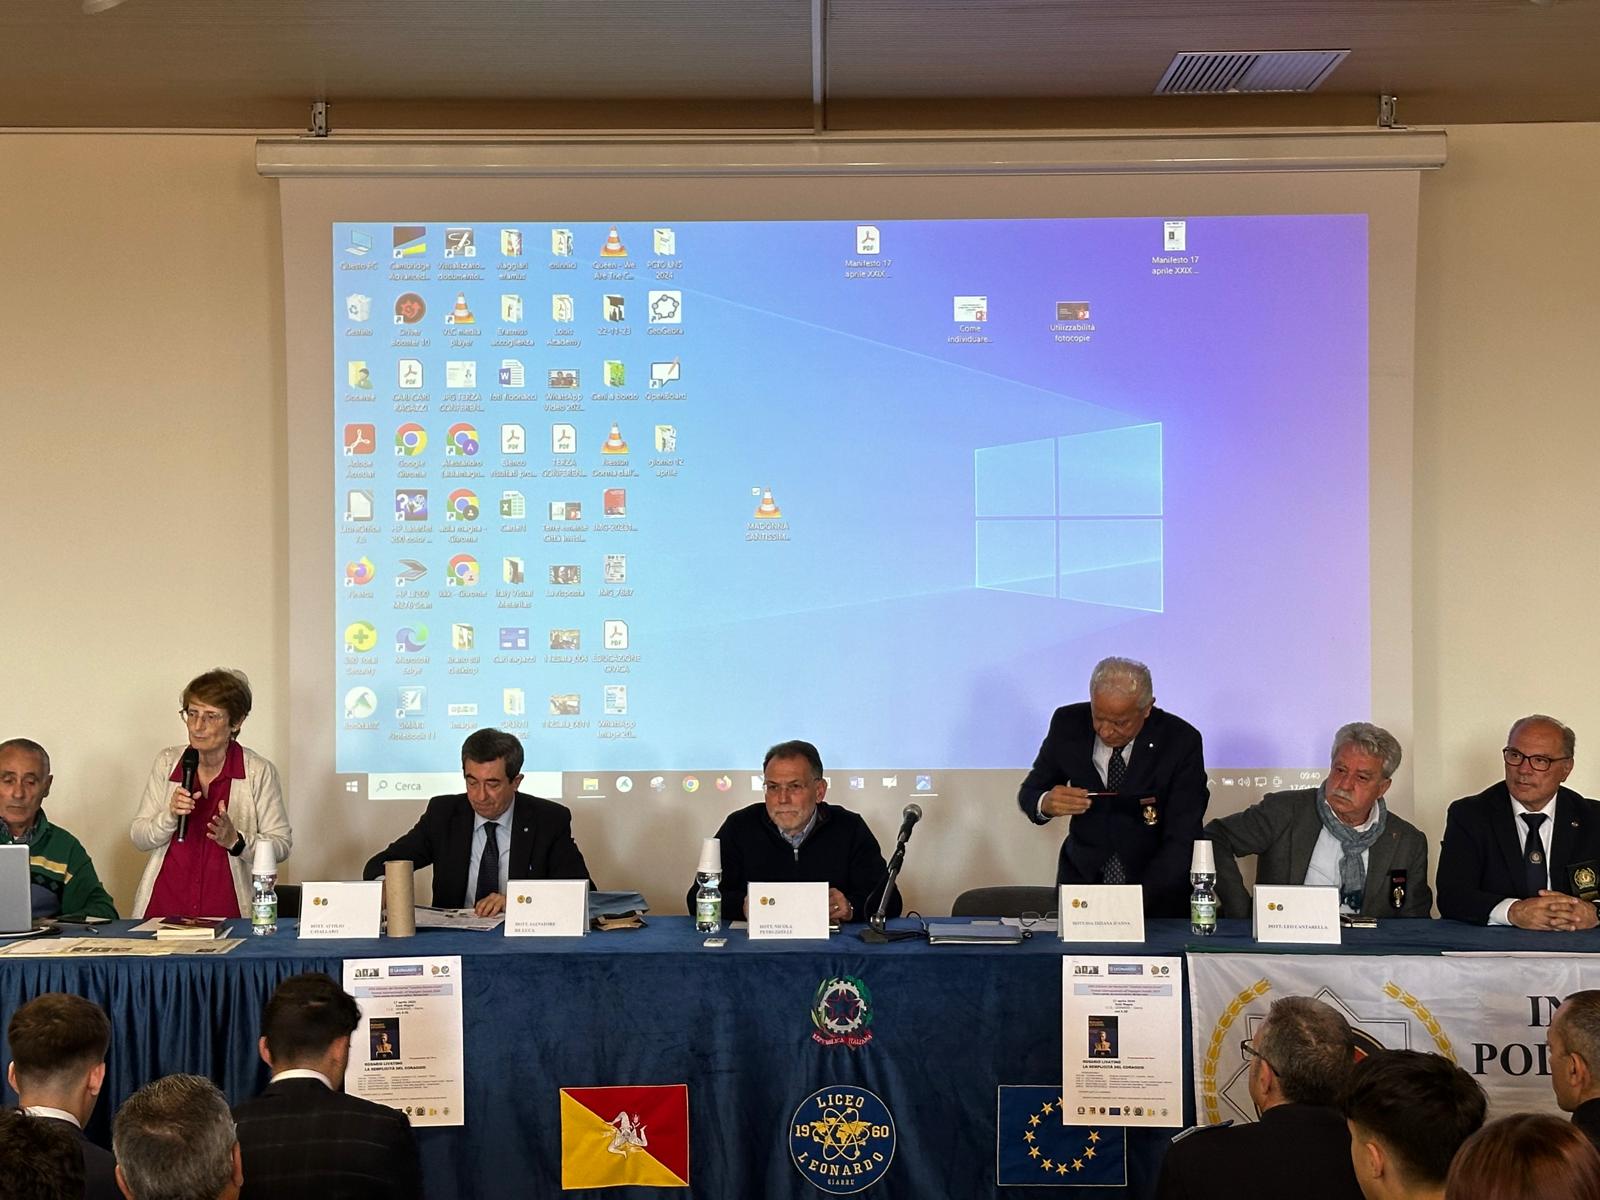 Il liceo Leonardo ha ospitato la 29esima edizione del premio intitolato ai giudici-eroni Livatino, Saetta e Costa